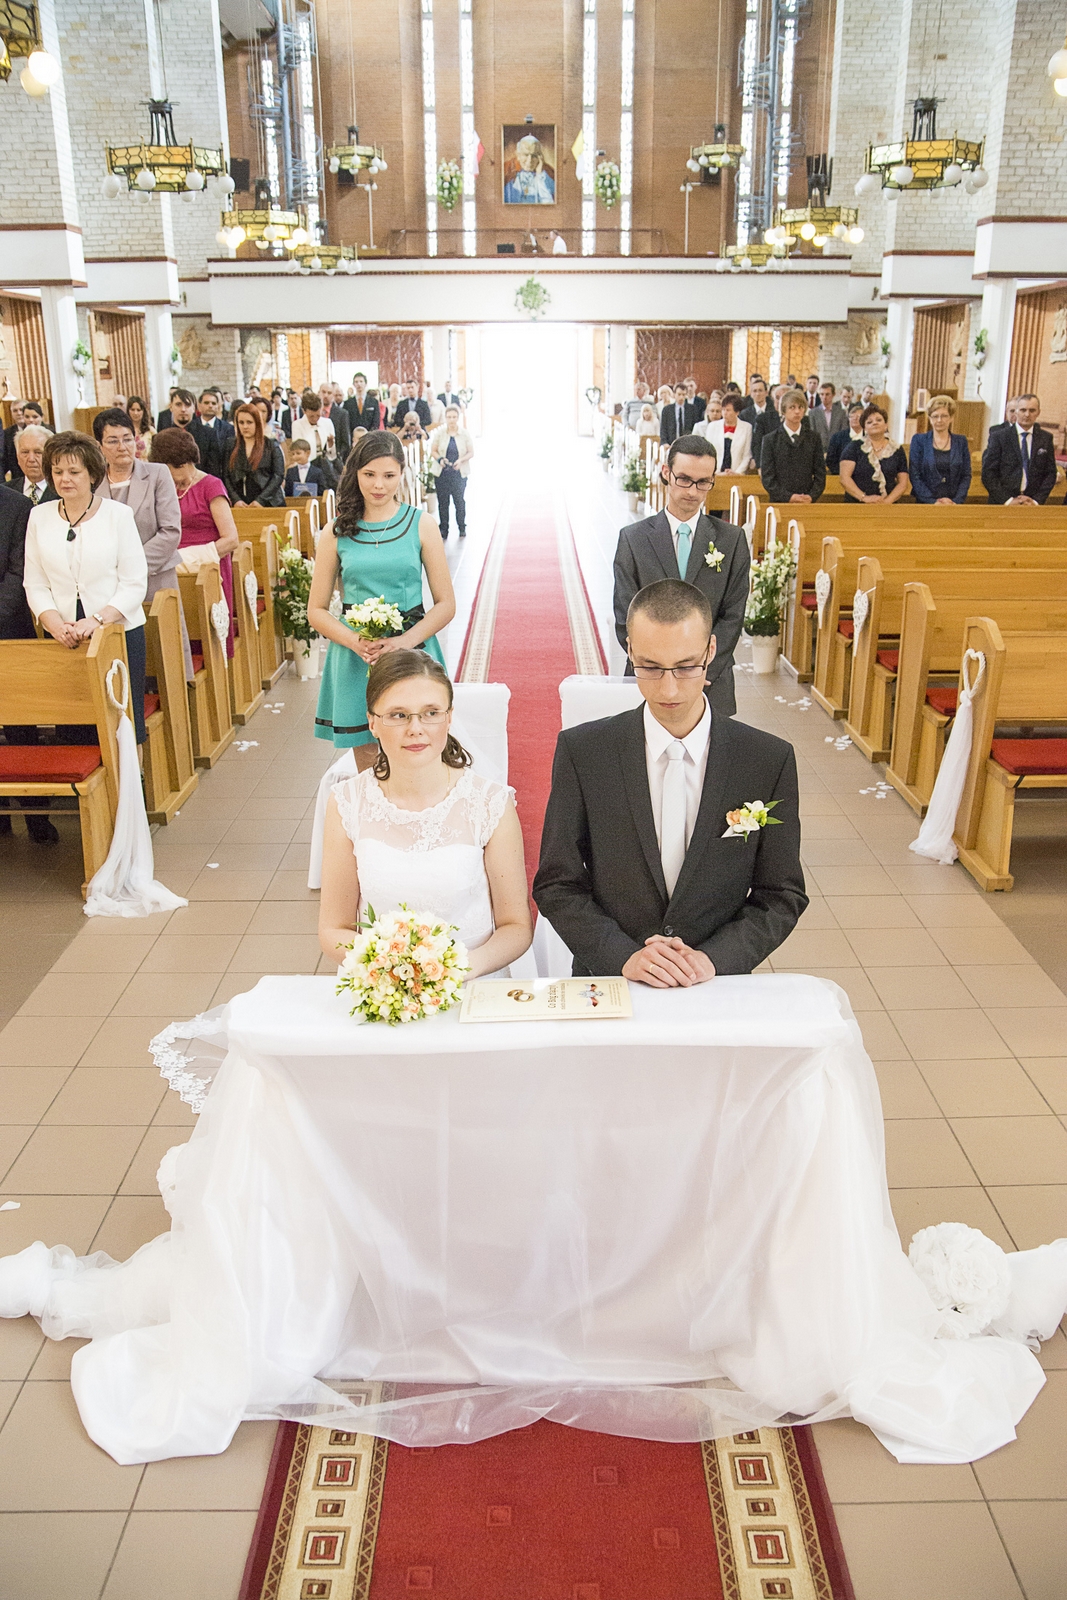 Fotograf ślubny robi artystyczne zdjęcia przed kościołem po ślubie pary młodej